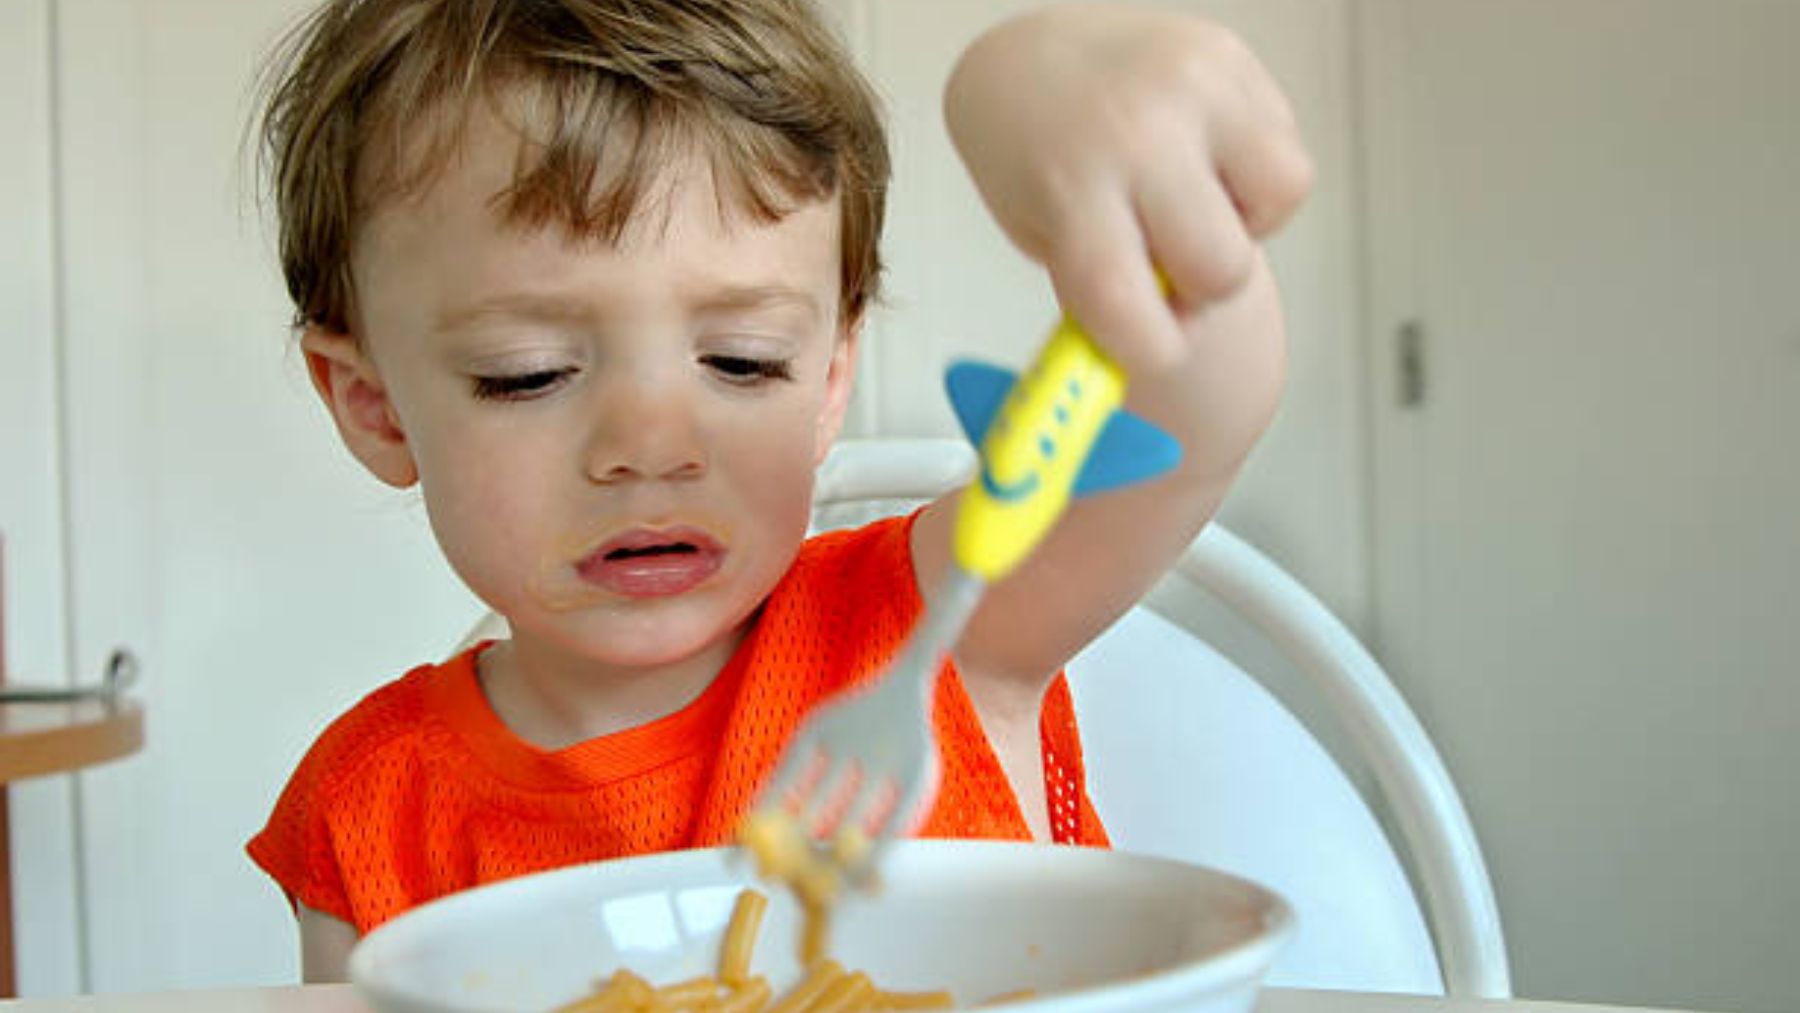 Calor: ¿Qué hacer cuando mi hijo no quiere comer?